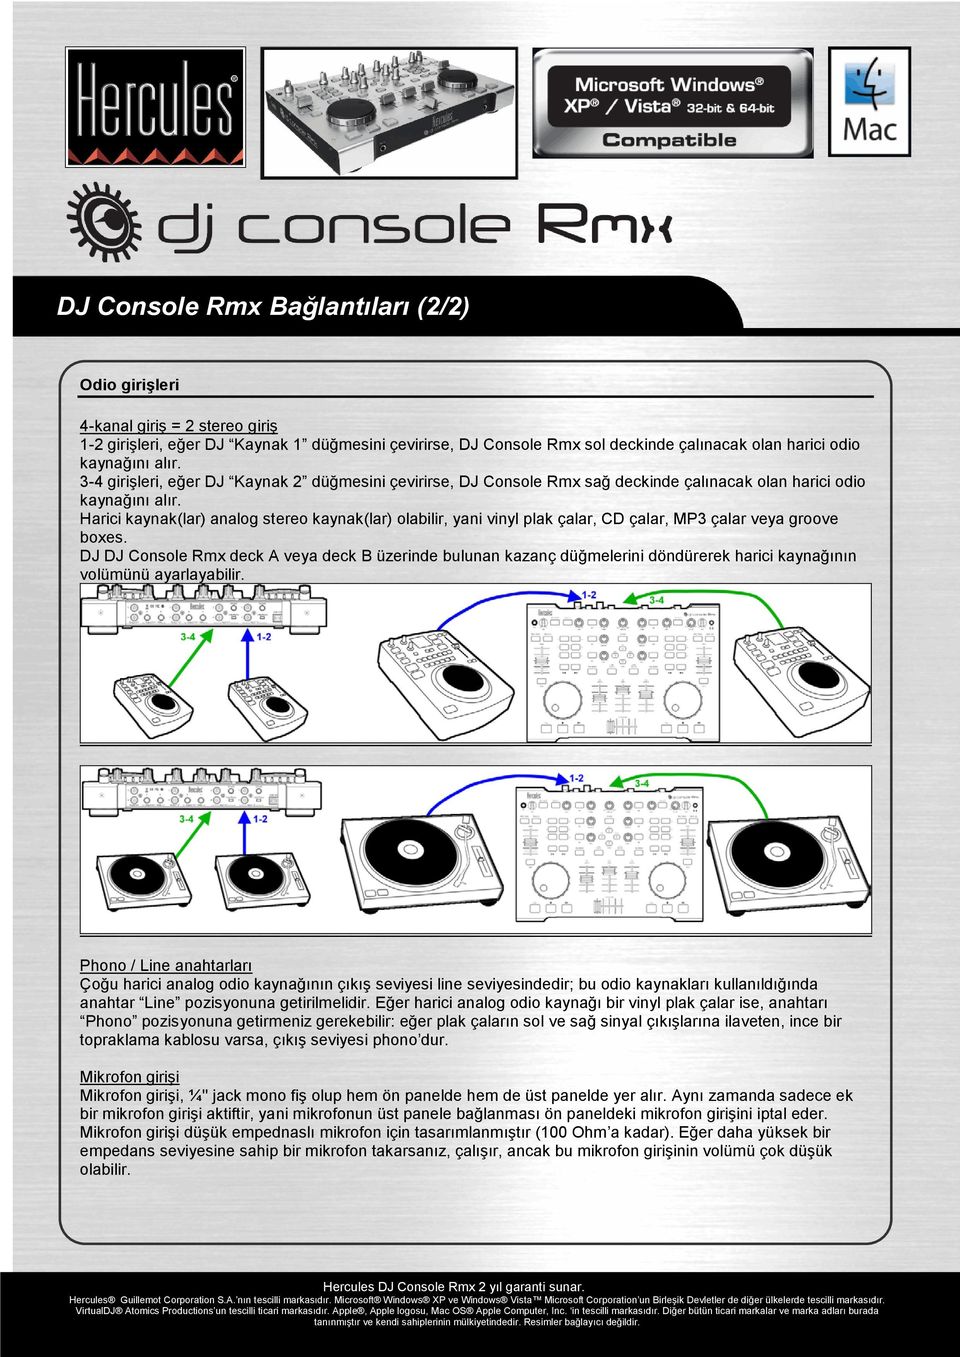 Harici kaynak(lar) analog stereo kaynak(lar) olabilir, yani vinyl plak çalar, CD çalar, MP3 çalar veya groove boxes.